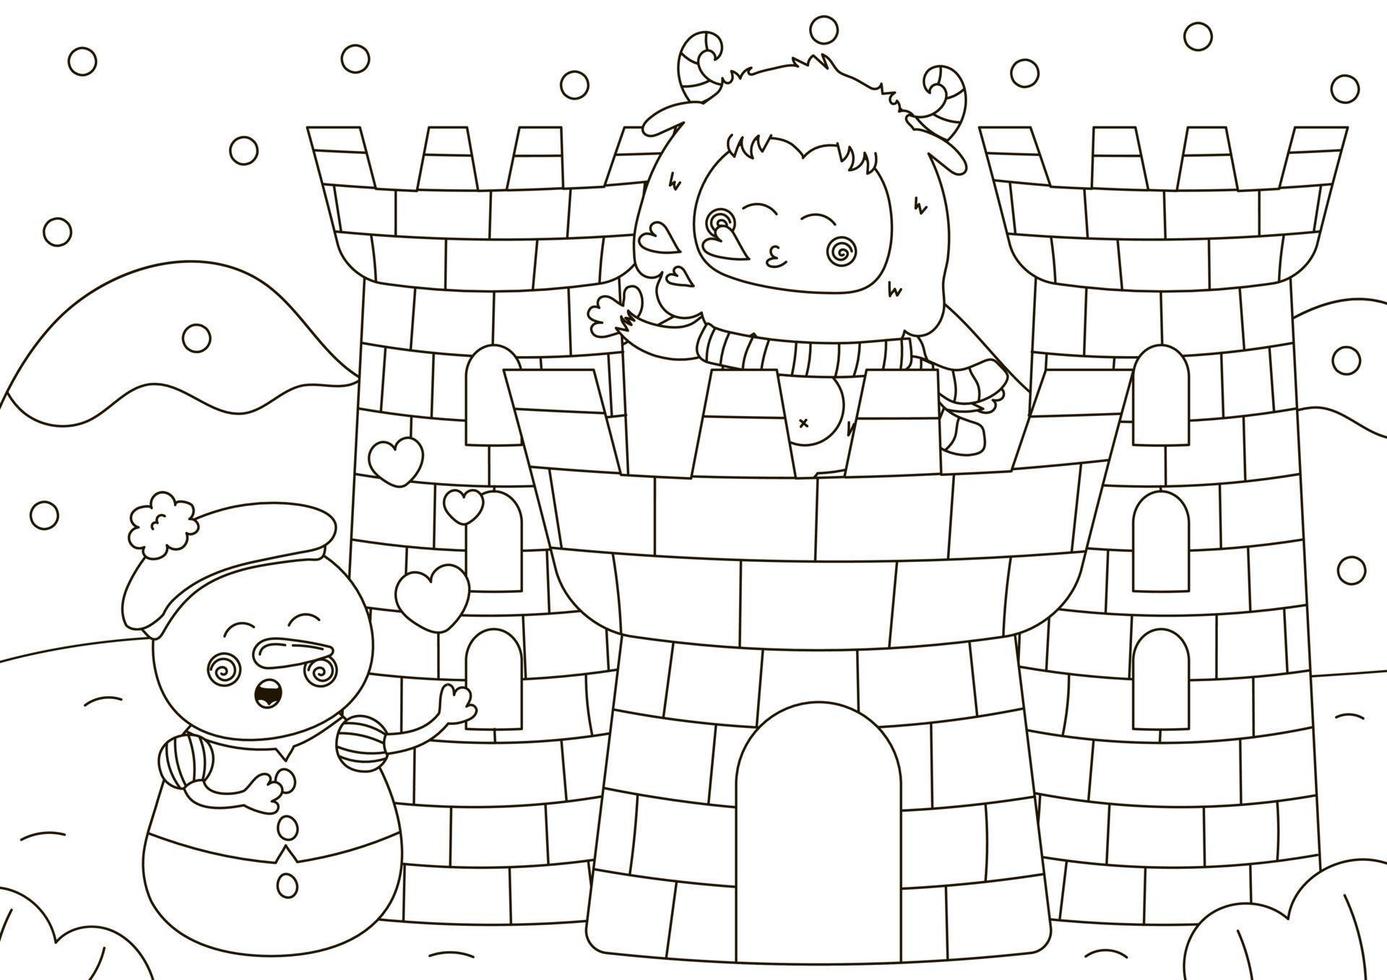 marrant coloration page avec mignonne yéti personnage soufflant une baiser de neige Château et bonhomme de neige en chantant romantique chanson vecteur